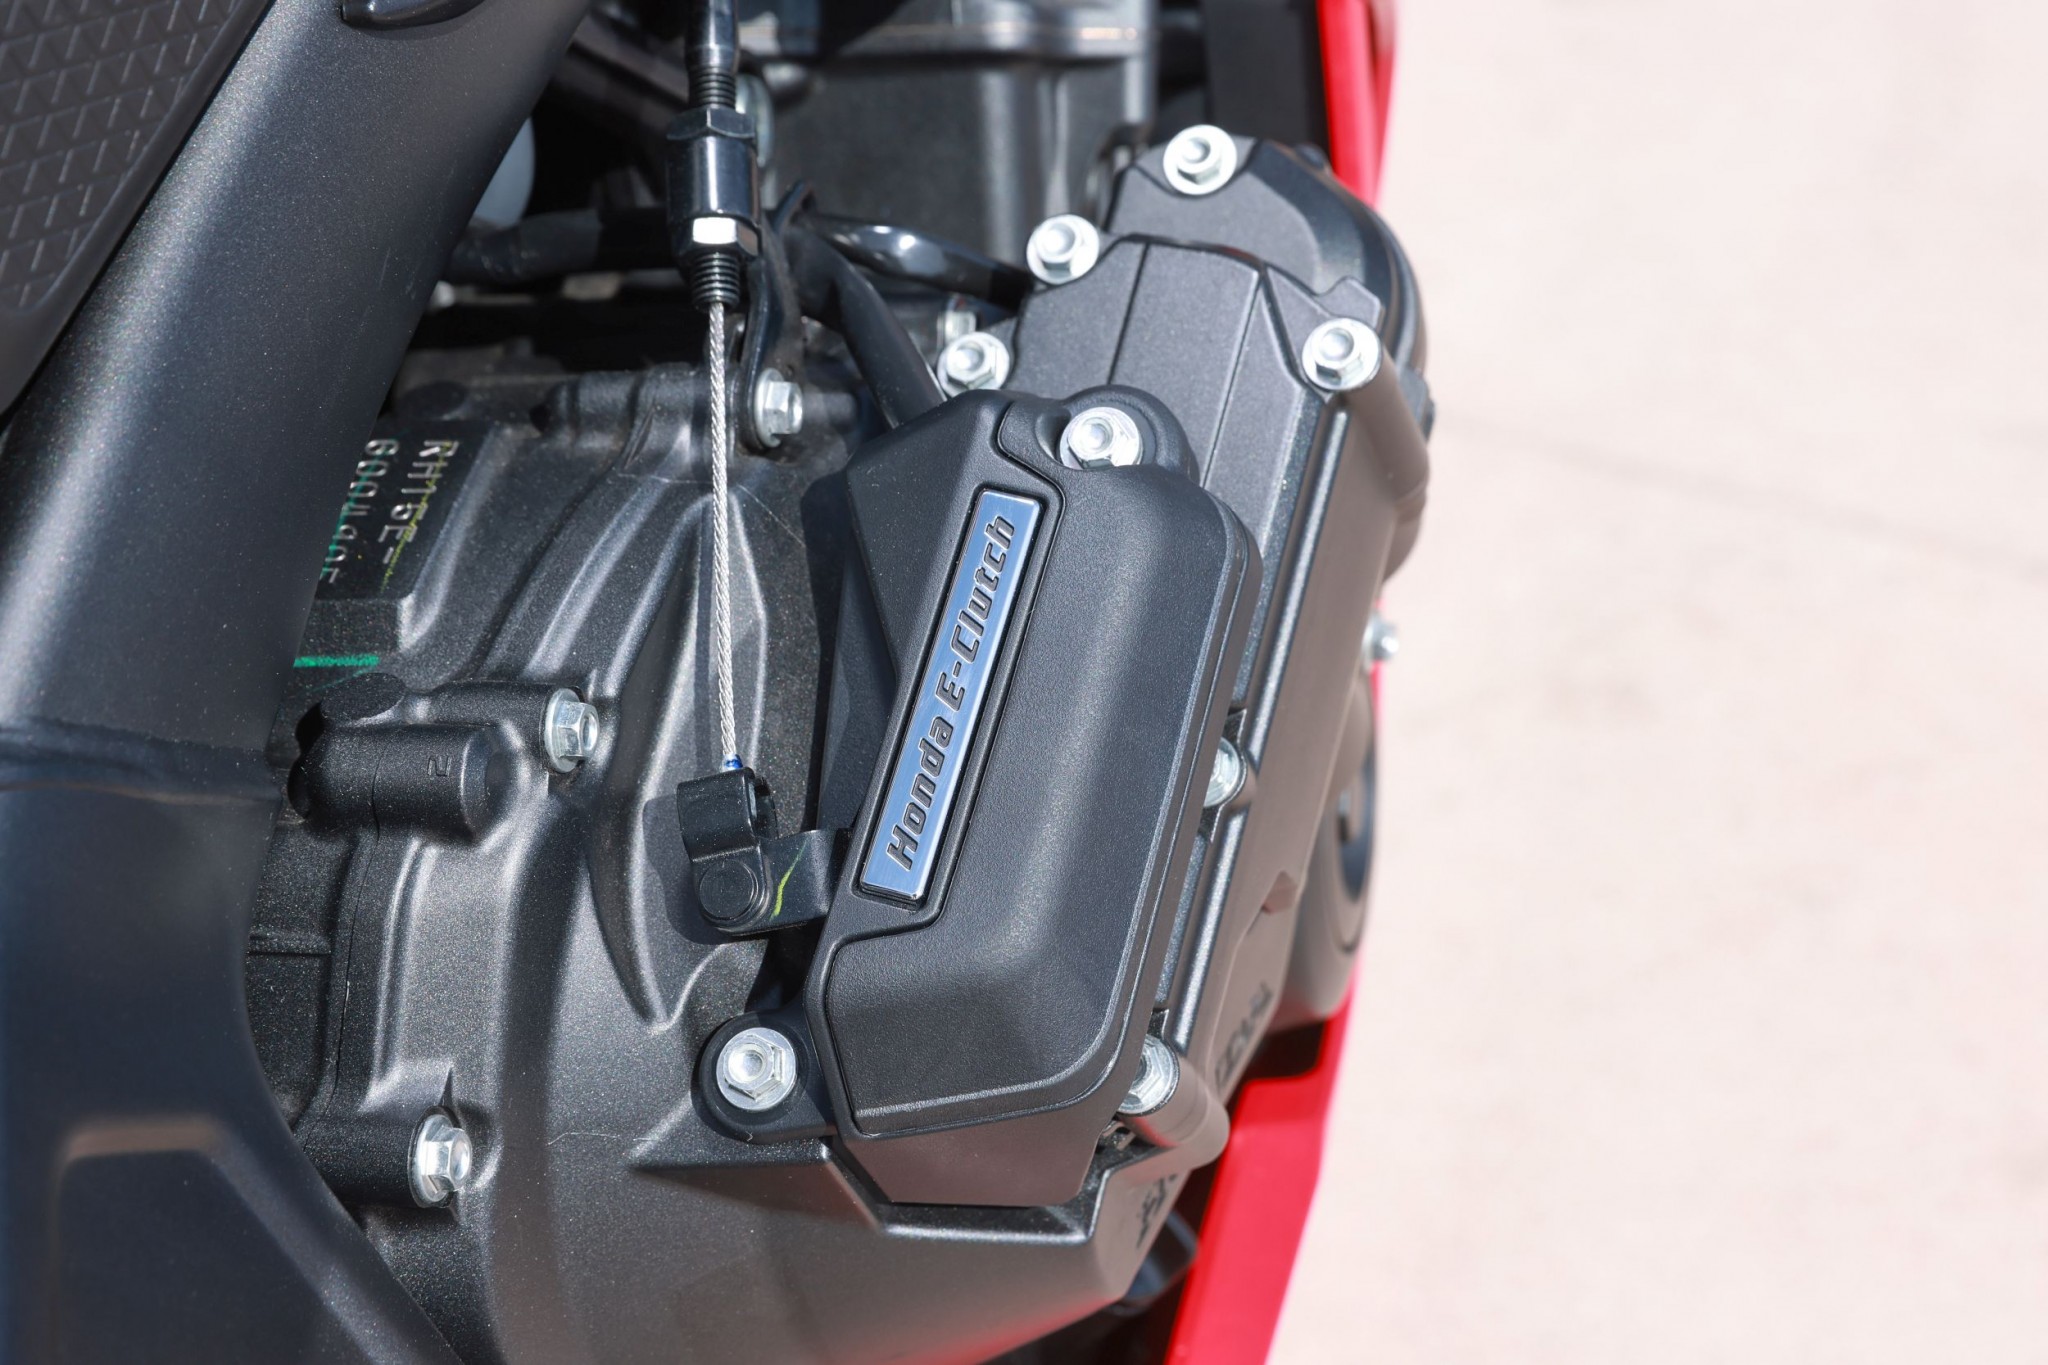 Test elektronske kvačila Honda CBR650R 2024

Honda je nedavno predstavila novu verziju svog popularnog motocikla CBR650R, koji sada dolazi sa elektronskim kvačilom, poznatim kao E-Clutch. Ova inovacija obećava da će olakšati vožnju omogućavajući vozačima da menjaju brzine bez potrebe za ručnim korišćenjem kvačila. 

Elektronsko kvačilo funkcioniše tako što automatski reguliše pritisak potreban za aktiviranje kvačila, što omogućava glatke promene brzina bez prekida u isporuci snage. Ovo je posebno korisno pri vožnji u gradu, gde česte promene brzina mogu biti naporne i otežavaju koncentraciju na saobraćaj.

Testiranje ovog sistema pokazalo je da E-Clutch ne samo da olakšava upravljanje motociklom, već i povećava sigurnost vožnje. Vozači mogu da se fokusiraju na okolinu bez brige o mehaničkim aspektima vožnje, što je posebno važno za manje iskusne vozače.

Honda CBR650R sa elektronskim kvačilom biće dostupna na tržištu od 2024. godine i očekuje se da će privući veliki broj kupaca, kako iskusnih tako i onih koji tek ulaze u svet motociklizma. Ovaj model predstavlja značajan korak napred u tehnologiji motocikala i potencijalno postavlja nove standarde u industriji. - Слика 33